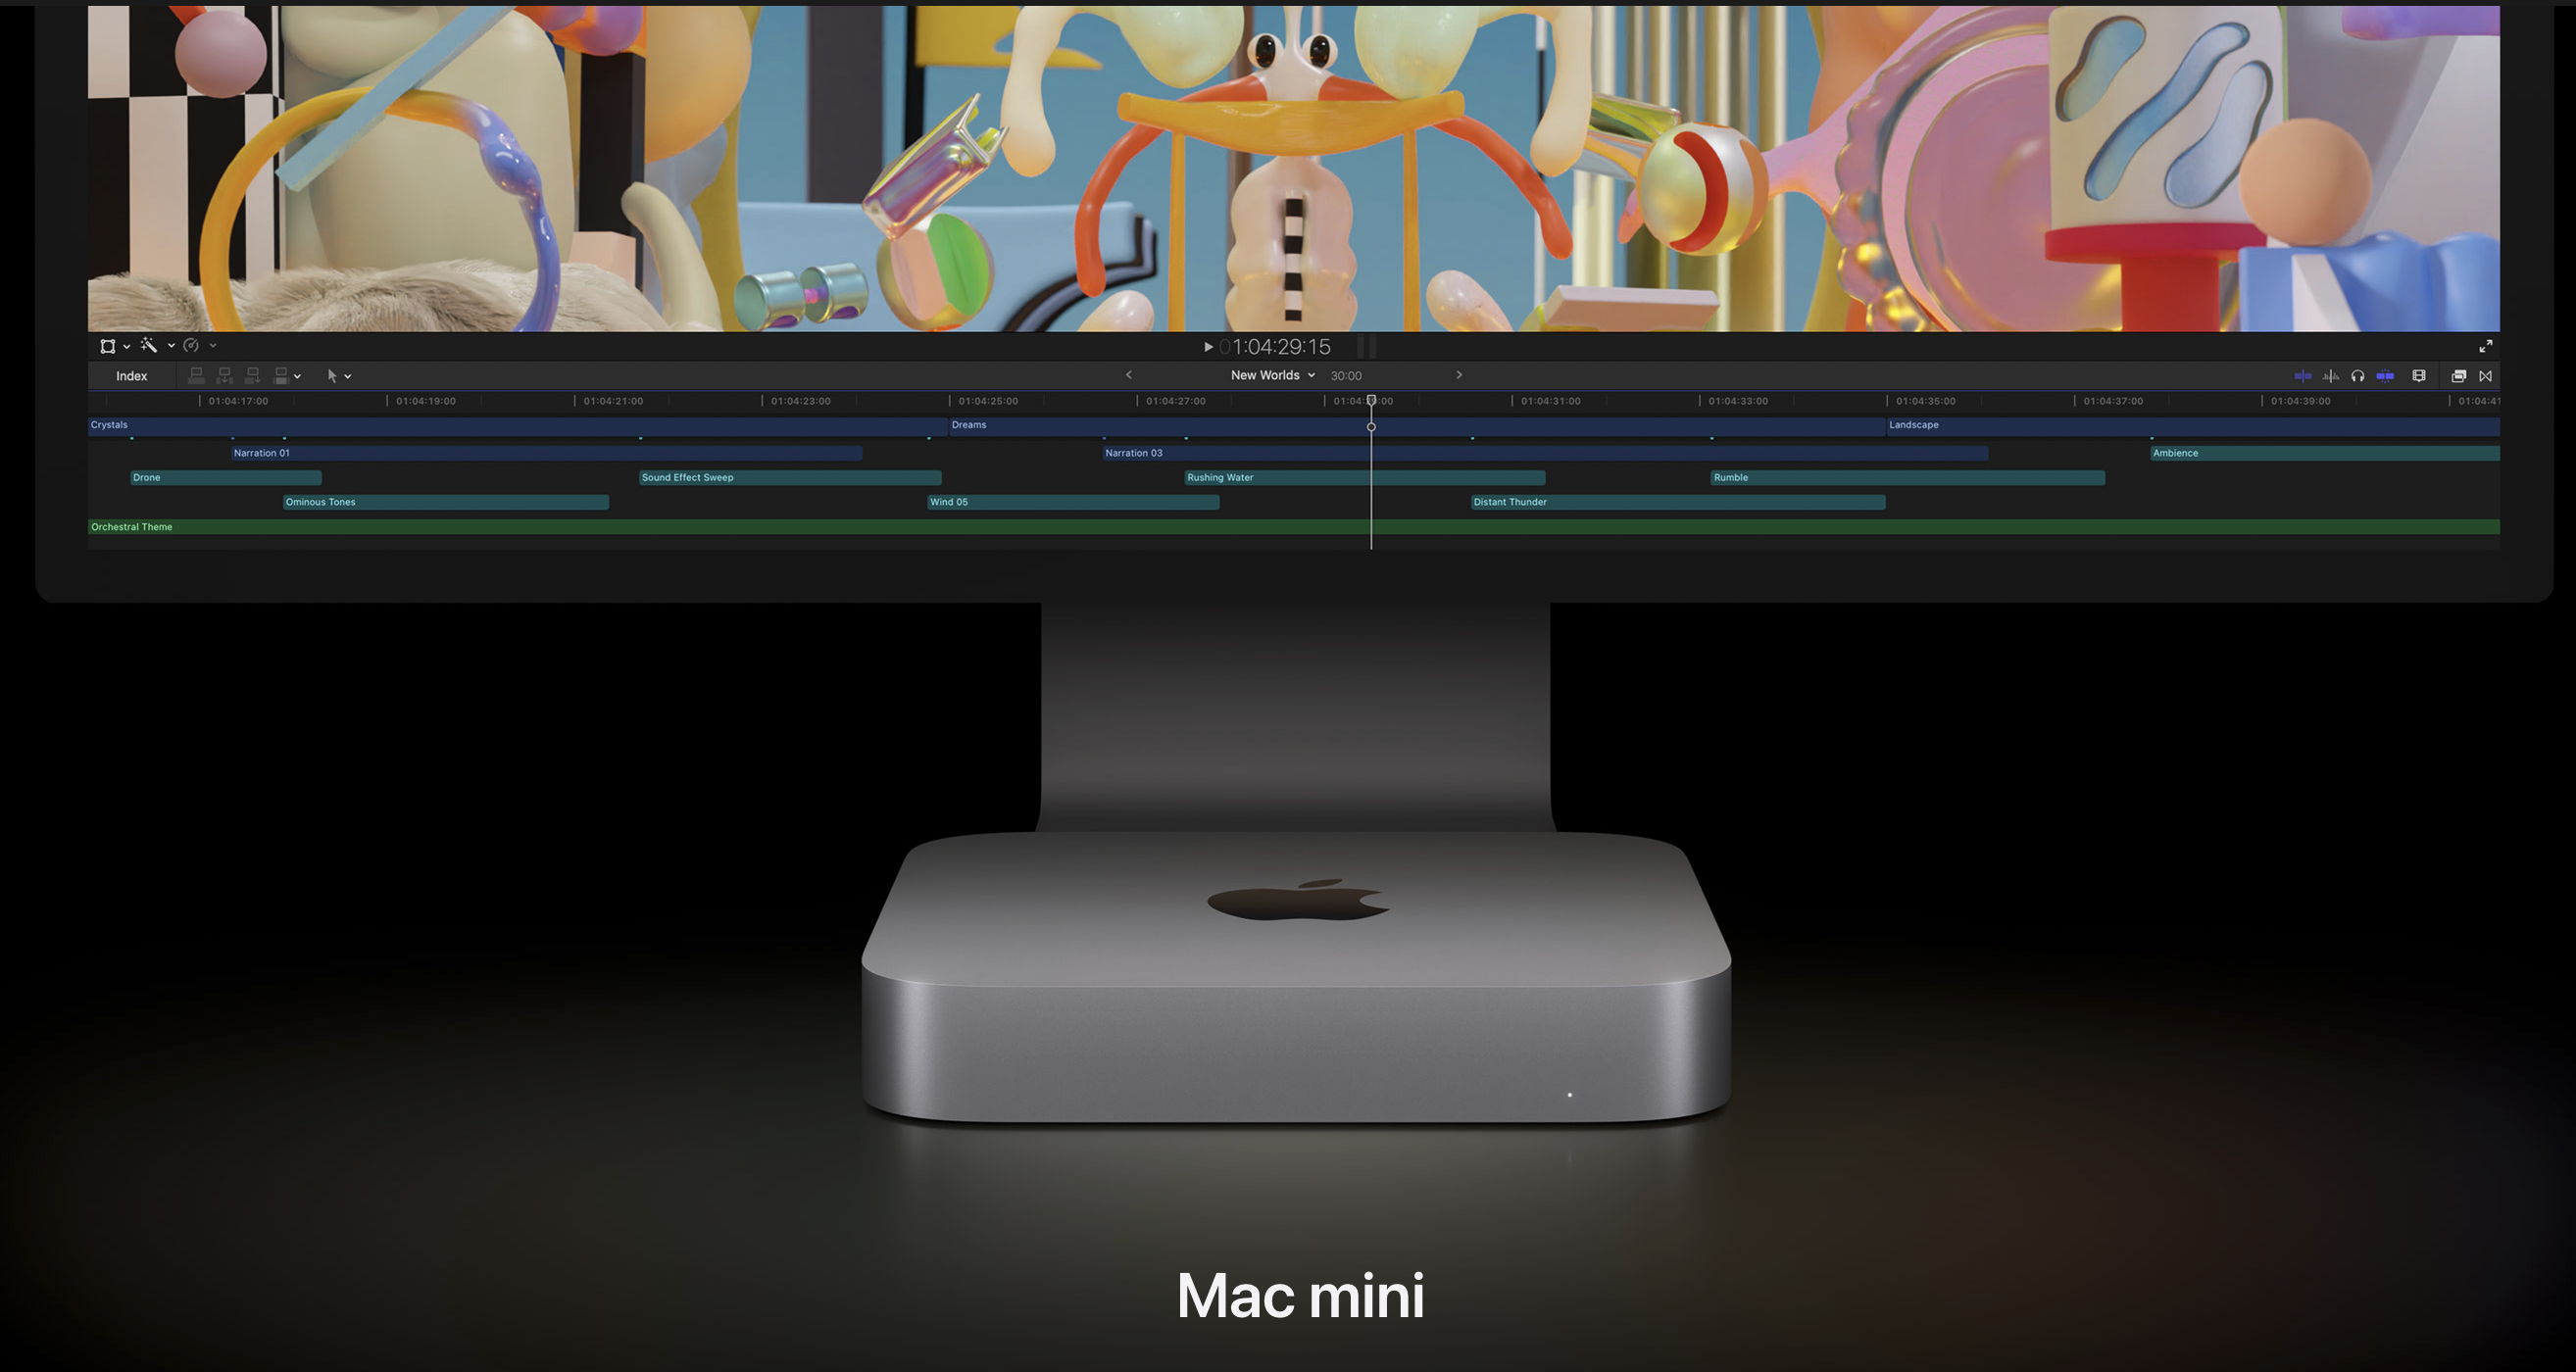 M1 MacBook AirからM2 ProのMac miniに買い換えるか悩んでいる話